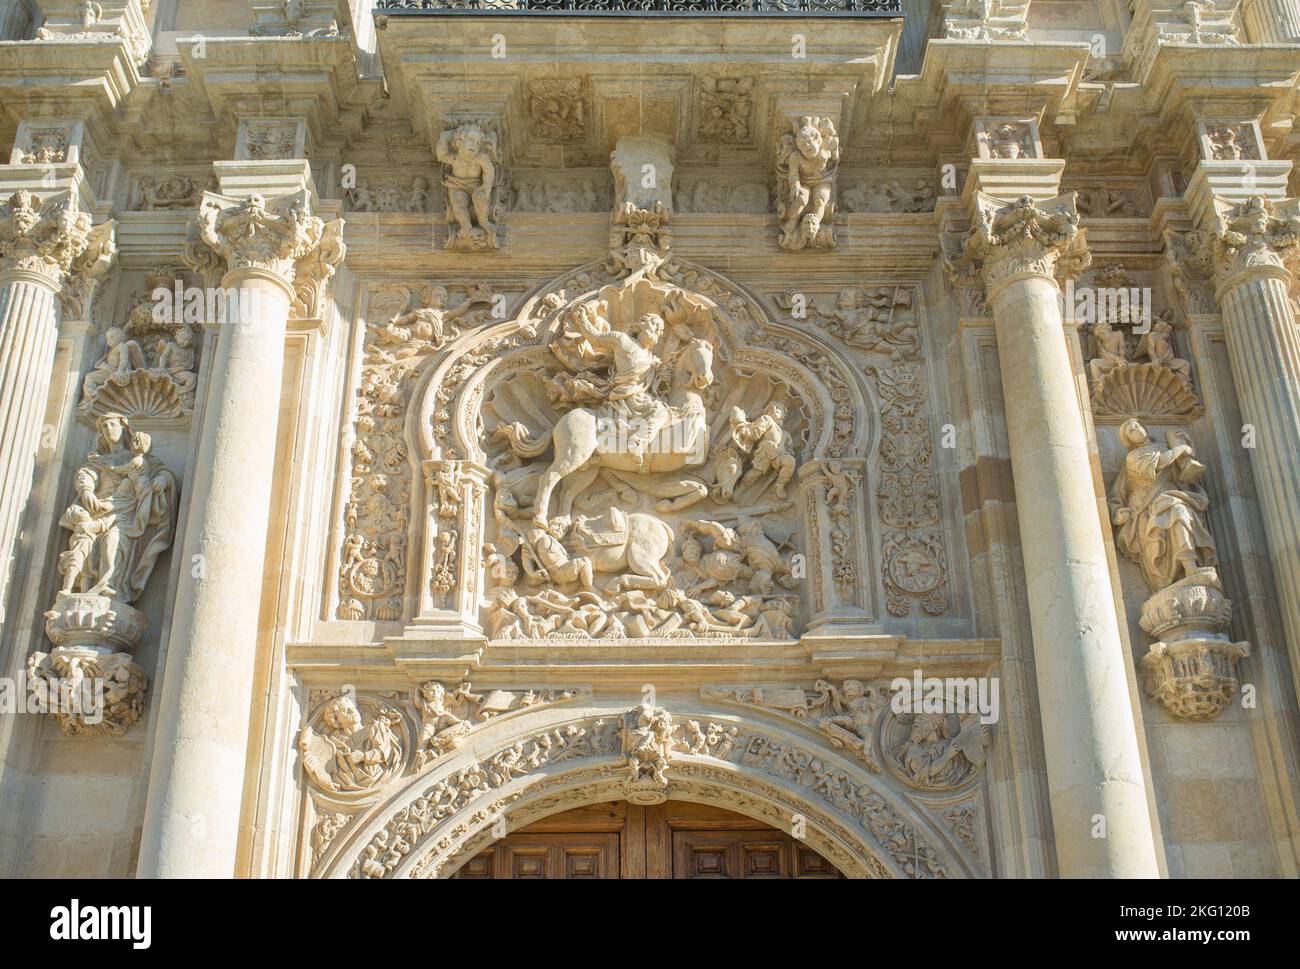 Saint James la sculpture de Moor-slayer. Couvent de San Marcos, Leon, Espagne. Bâtiment du XIIe siècle abritant désormais un hôtel de luxe parador Banque D'Images